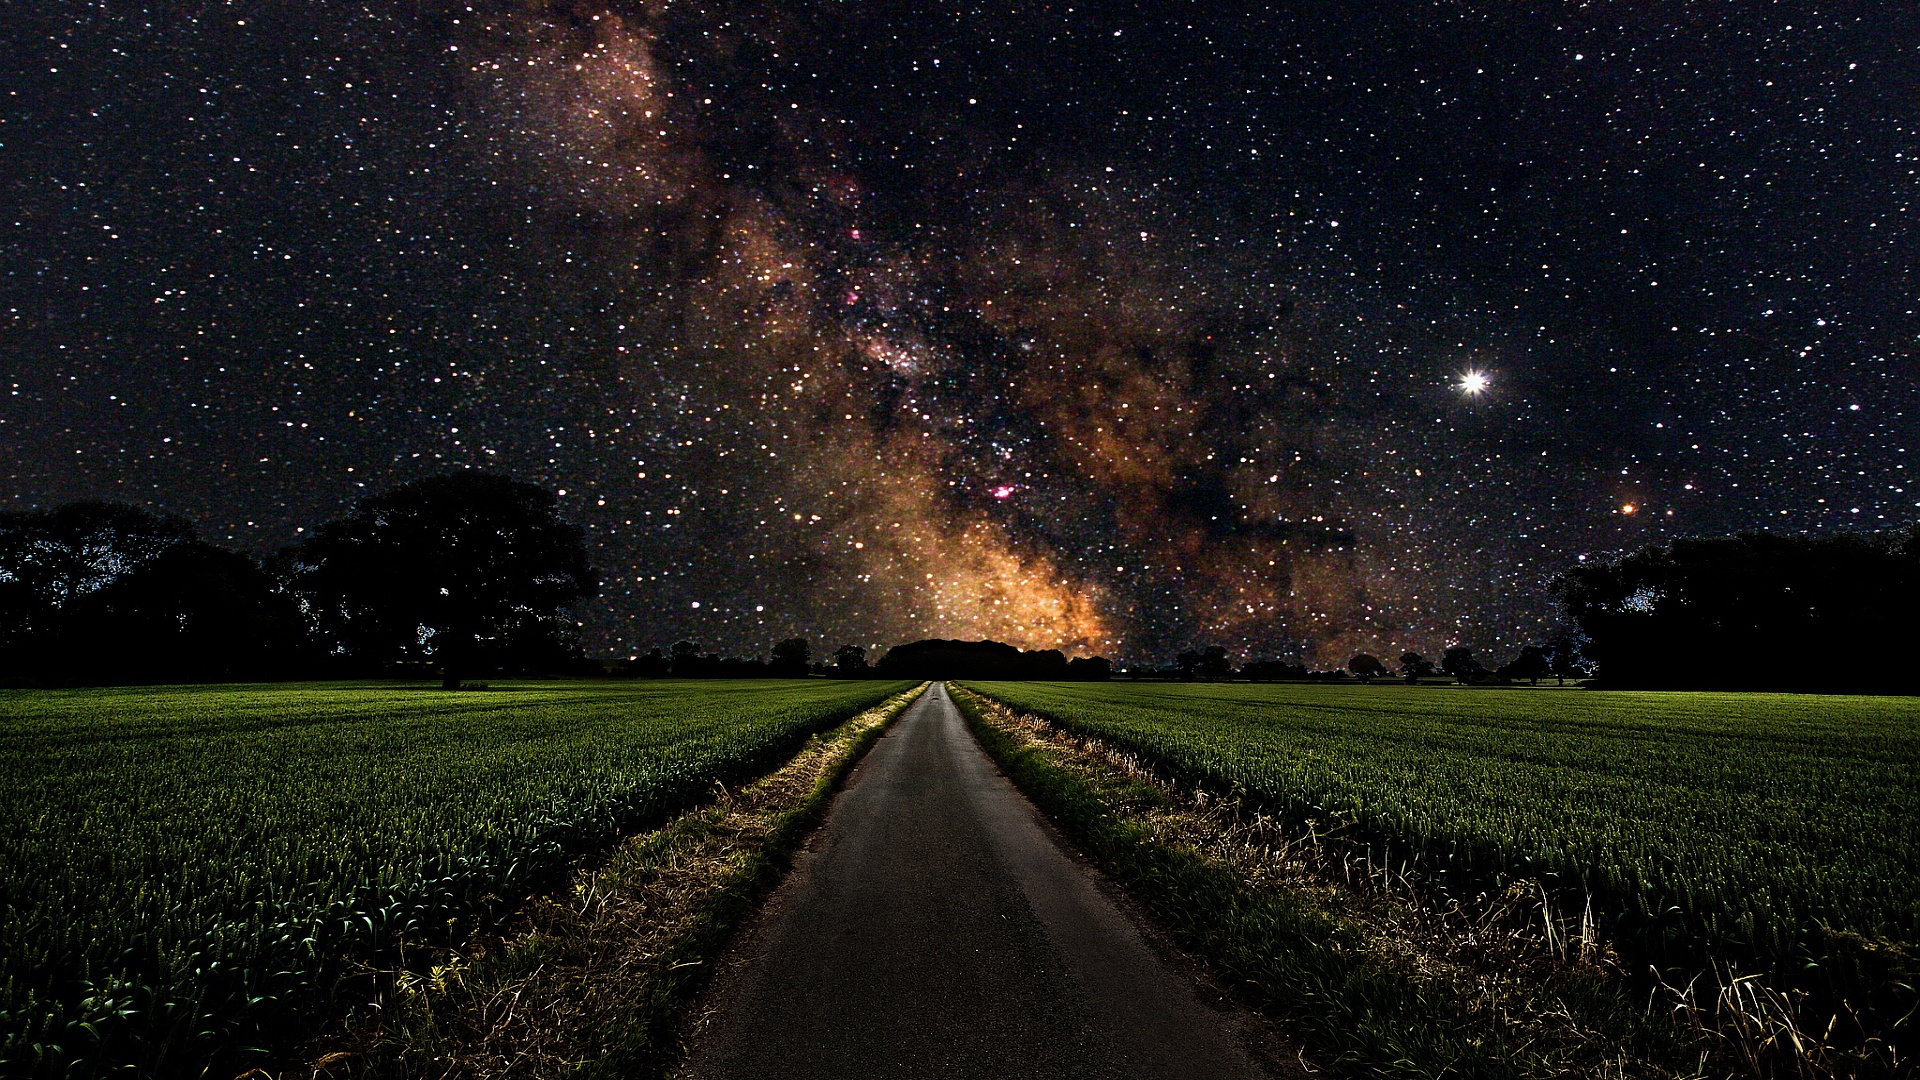 Tải về những hình ảnh đẹp nhất của vũ trụ, bầu trời đêm và dải Ngân Hà để trang trí cho máy tính và điện thoại của mình. Tận hưởng những khoảnh khắc đẹp nhất của vũ trụ và khiến cho màn hình thiết bị của bạn thêm phong phú và đẹp mắt hơn.